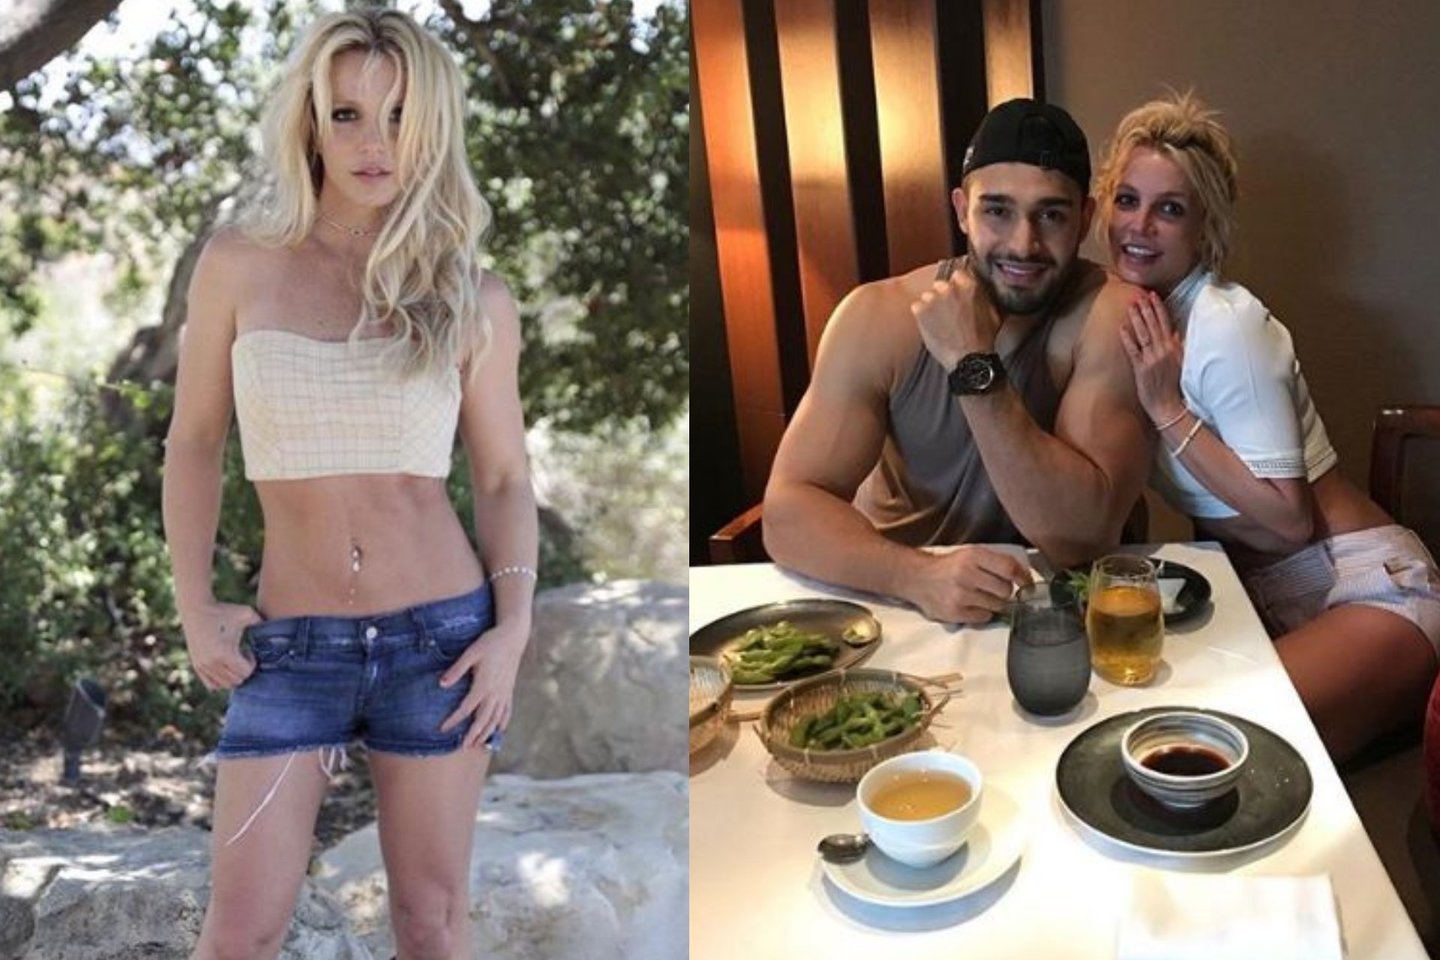  Daininkė Britney Spears pastaruoju metu yra itin užsiėmusi pasiruošimu pasauliniam turui „Piece of Me“.<br> Soc. tinklo „Instagram“ nuotr.